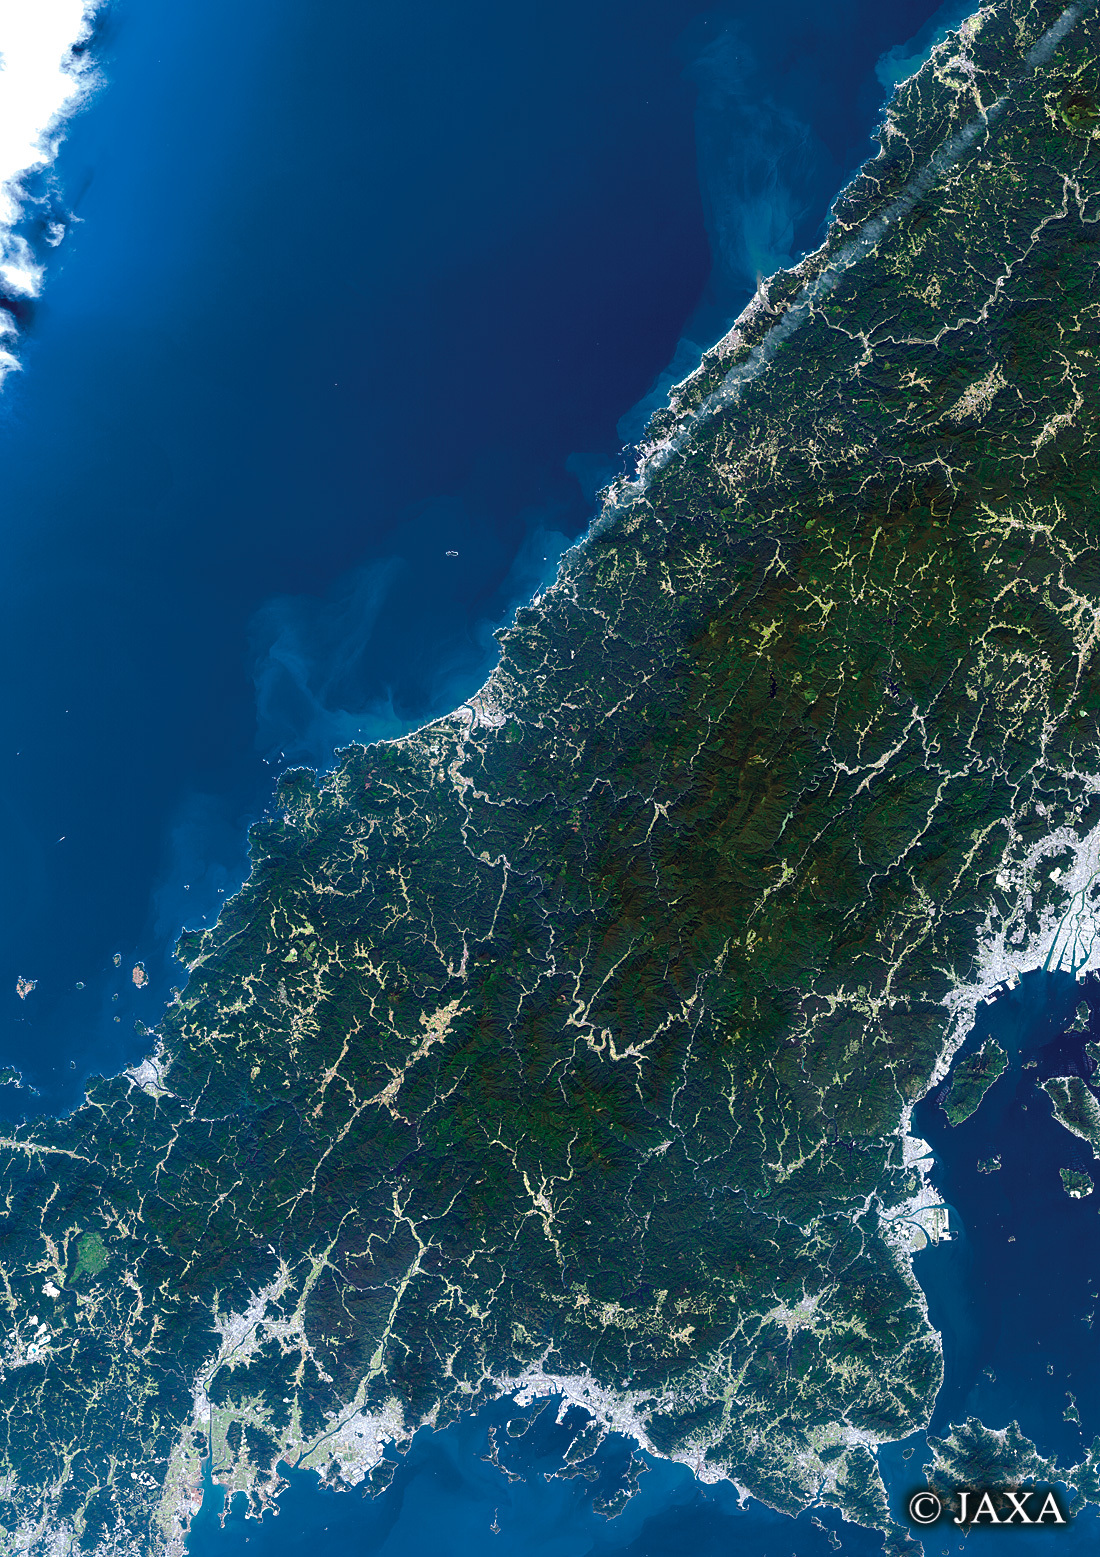 だいちから見た日本の都市 島根県西部と周辺地域:衛星画像